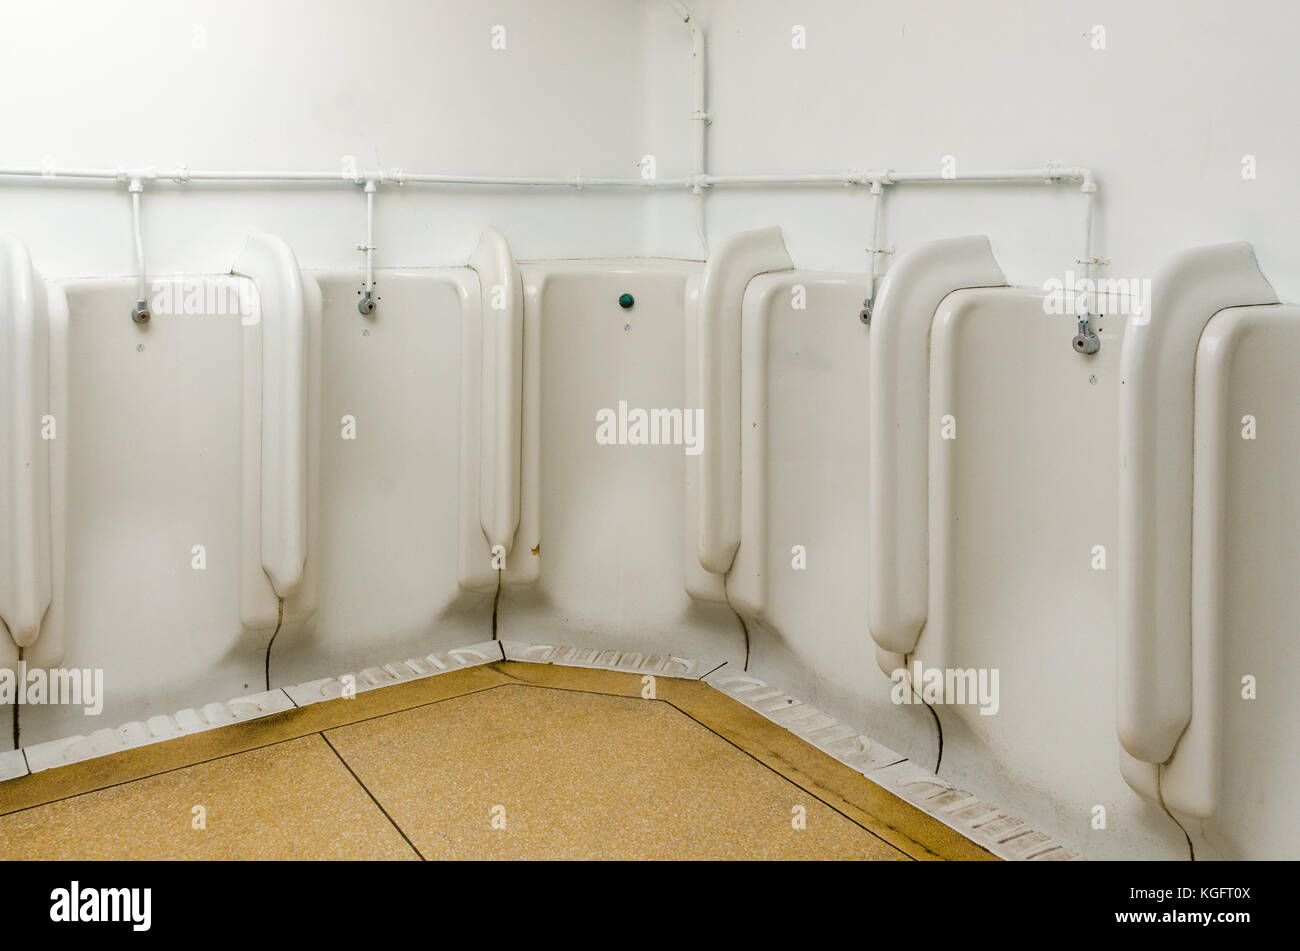 Altmodische keramische Urinale für Männer in der öffentlichen Toilette in Plymouth, Großbritannien Stockfoto